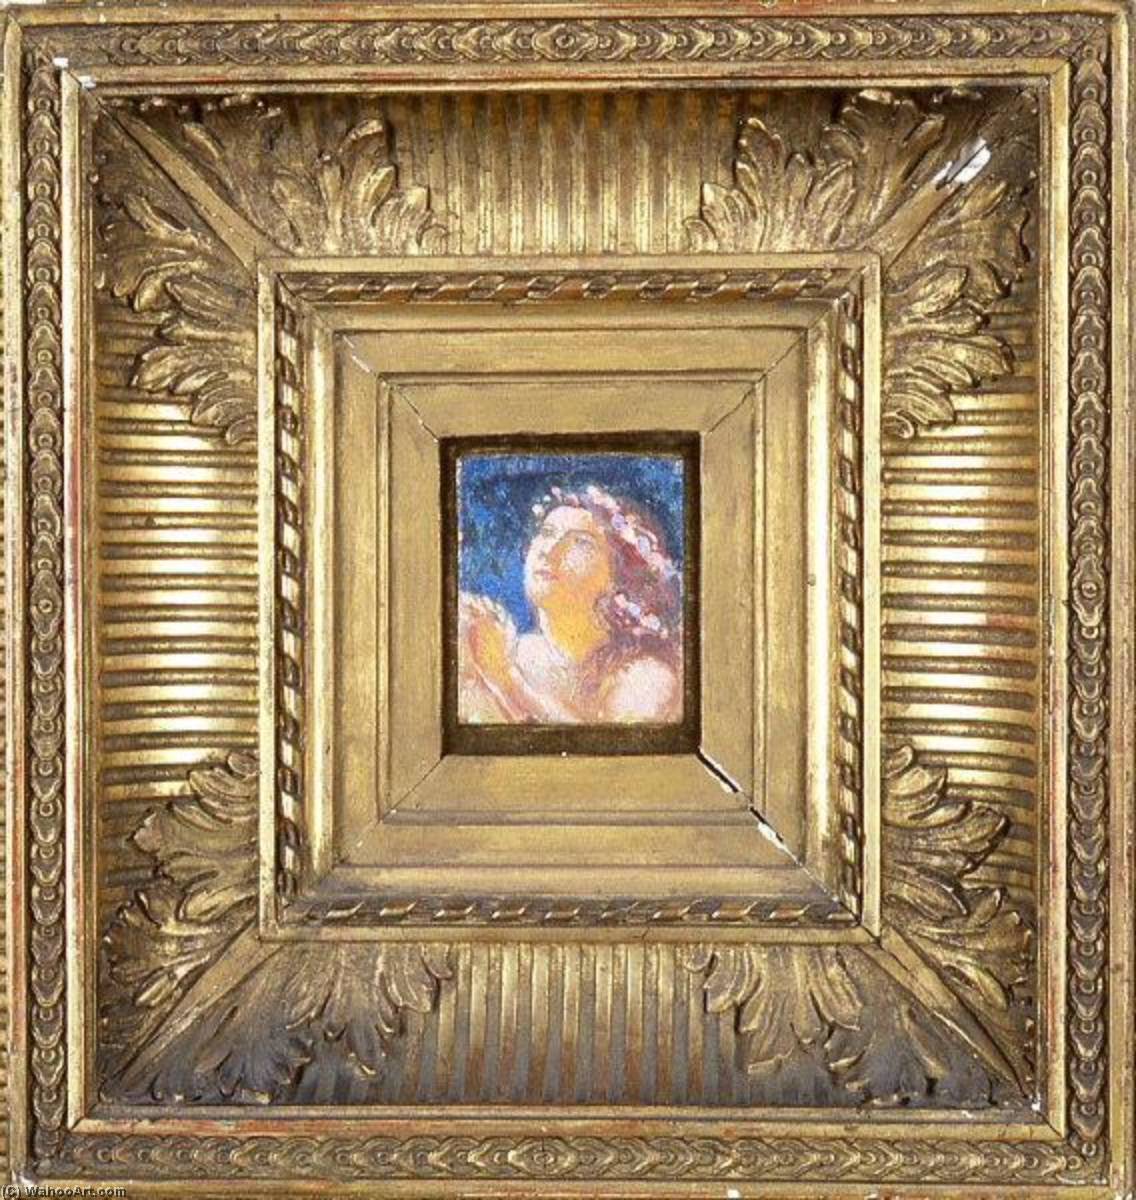 Acheter Reproductions D'art De Musée Orante fleurie de Denis Maurice (1870-1943, France) | ArtsDot.com